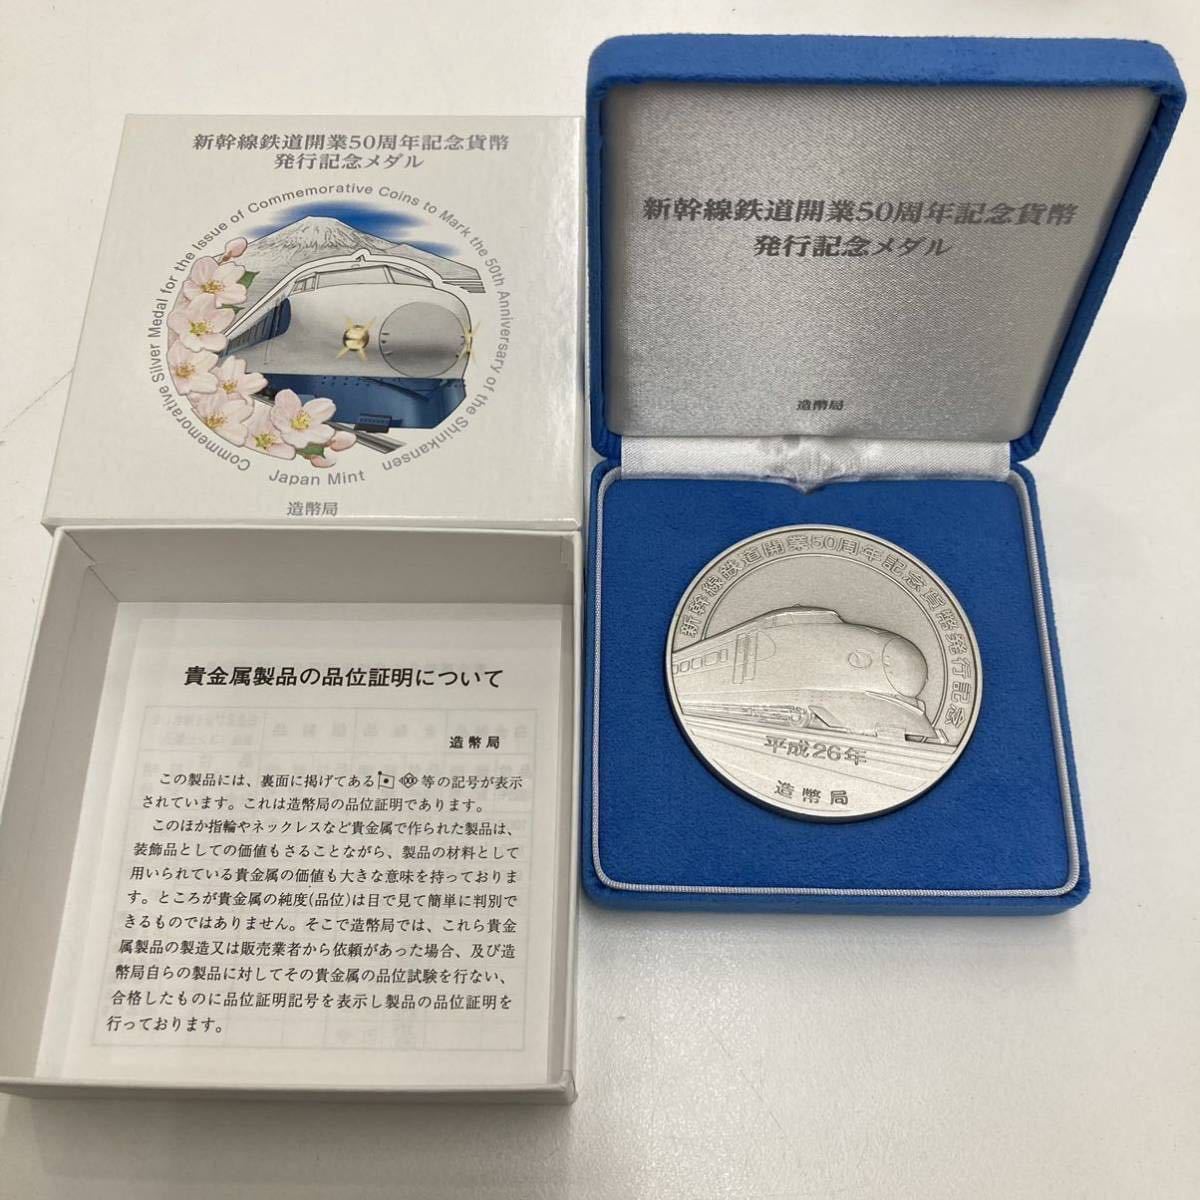 ヤフオク! -「新幹線鉄道開業50周年記念貨幣発行記念メダル」の落札 